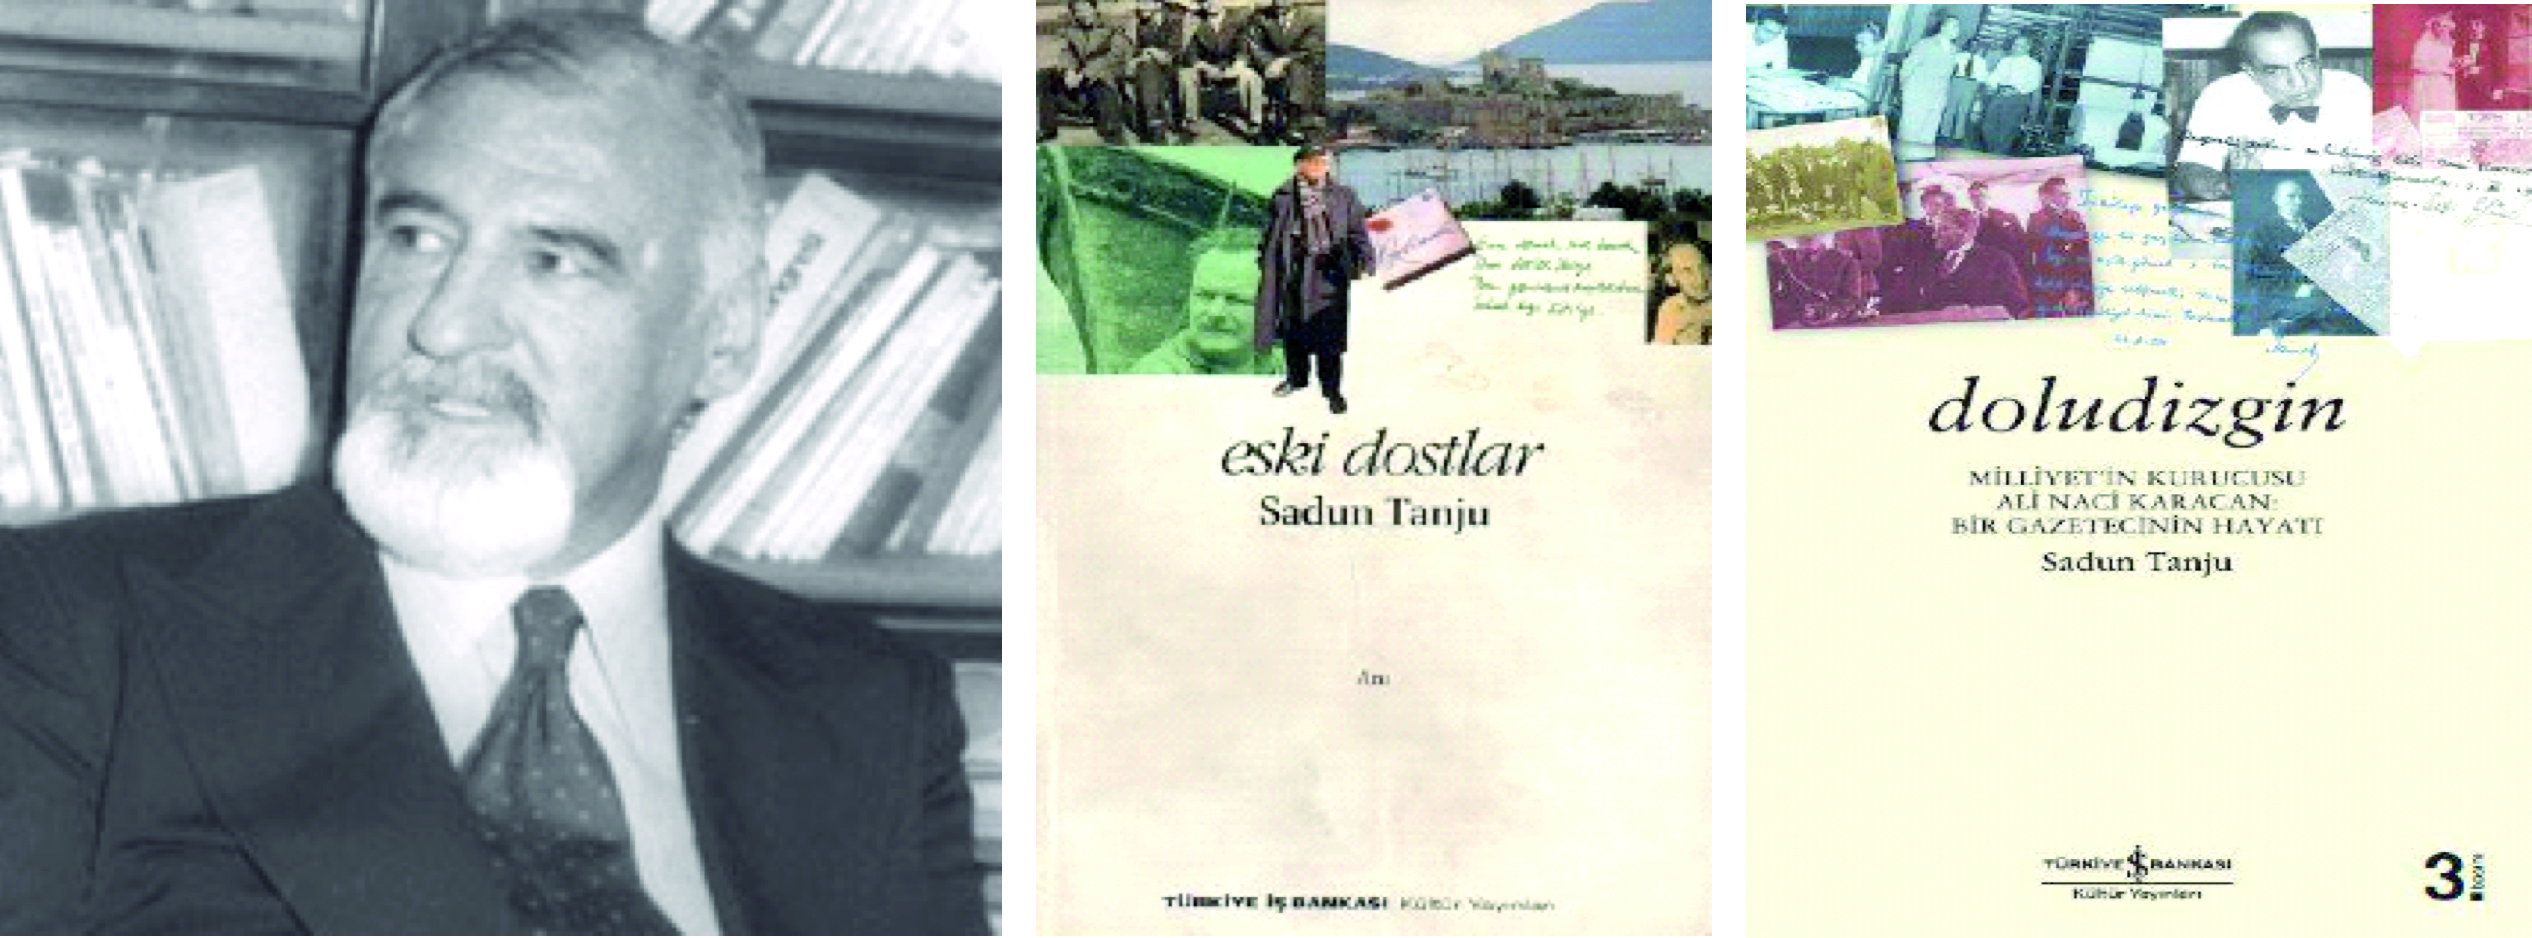 Milliyet'in kurucusu Ali Naci Karacan'ın yaşamının anlatıldığı "Doludizgin" ve yazarı Sadun Tanju